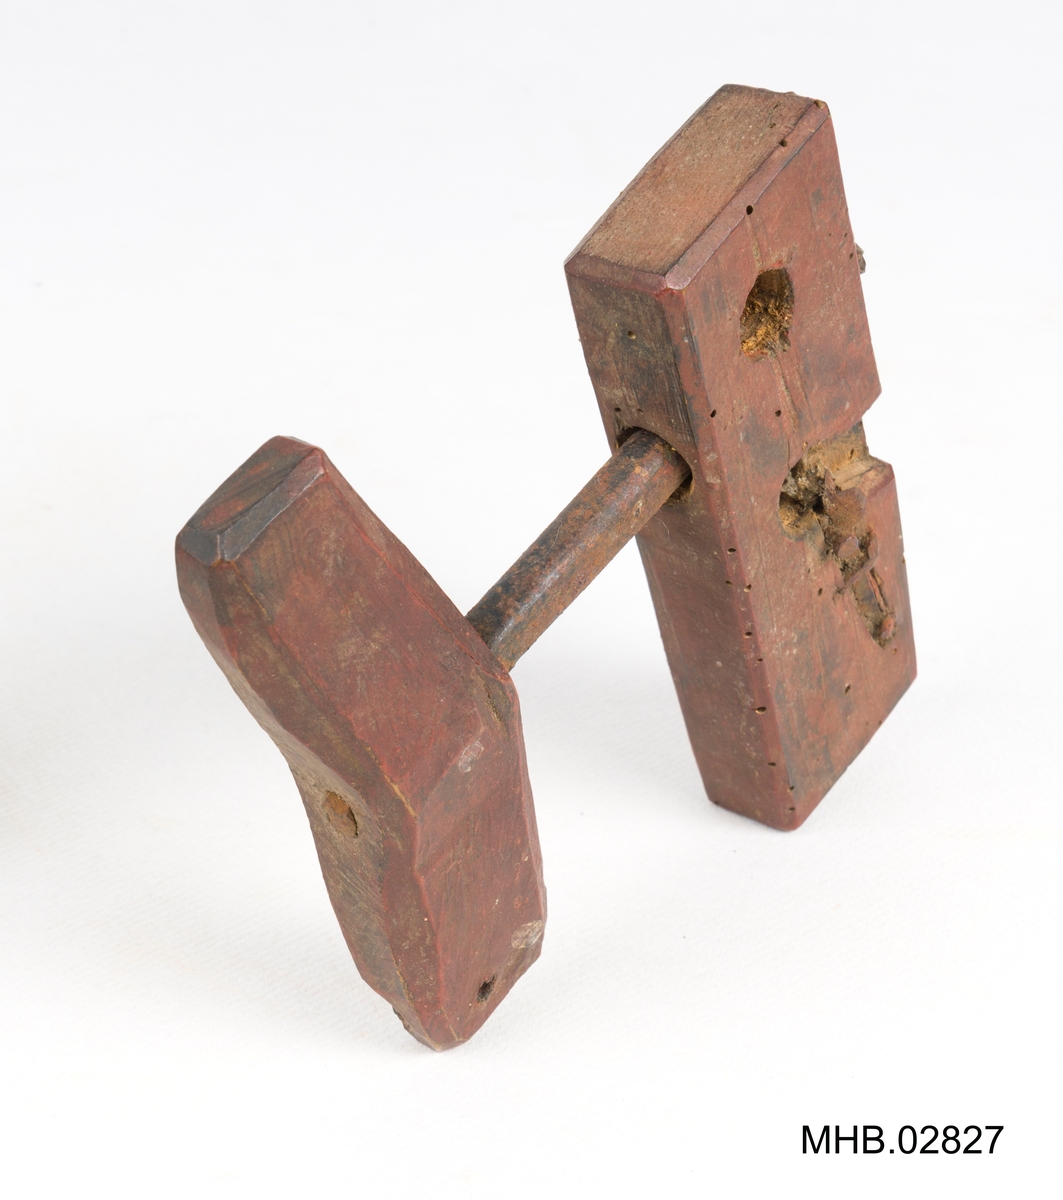 Snitt til å lage skruegjenger i tre.
Bestående av to deler; en treklosse med 3 hull og et håndtak med jernbor.